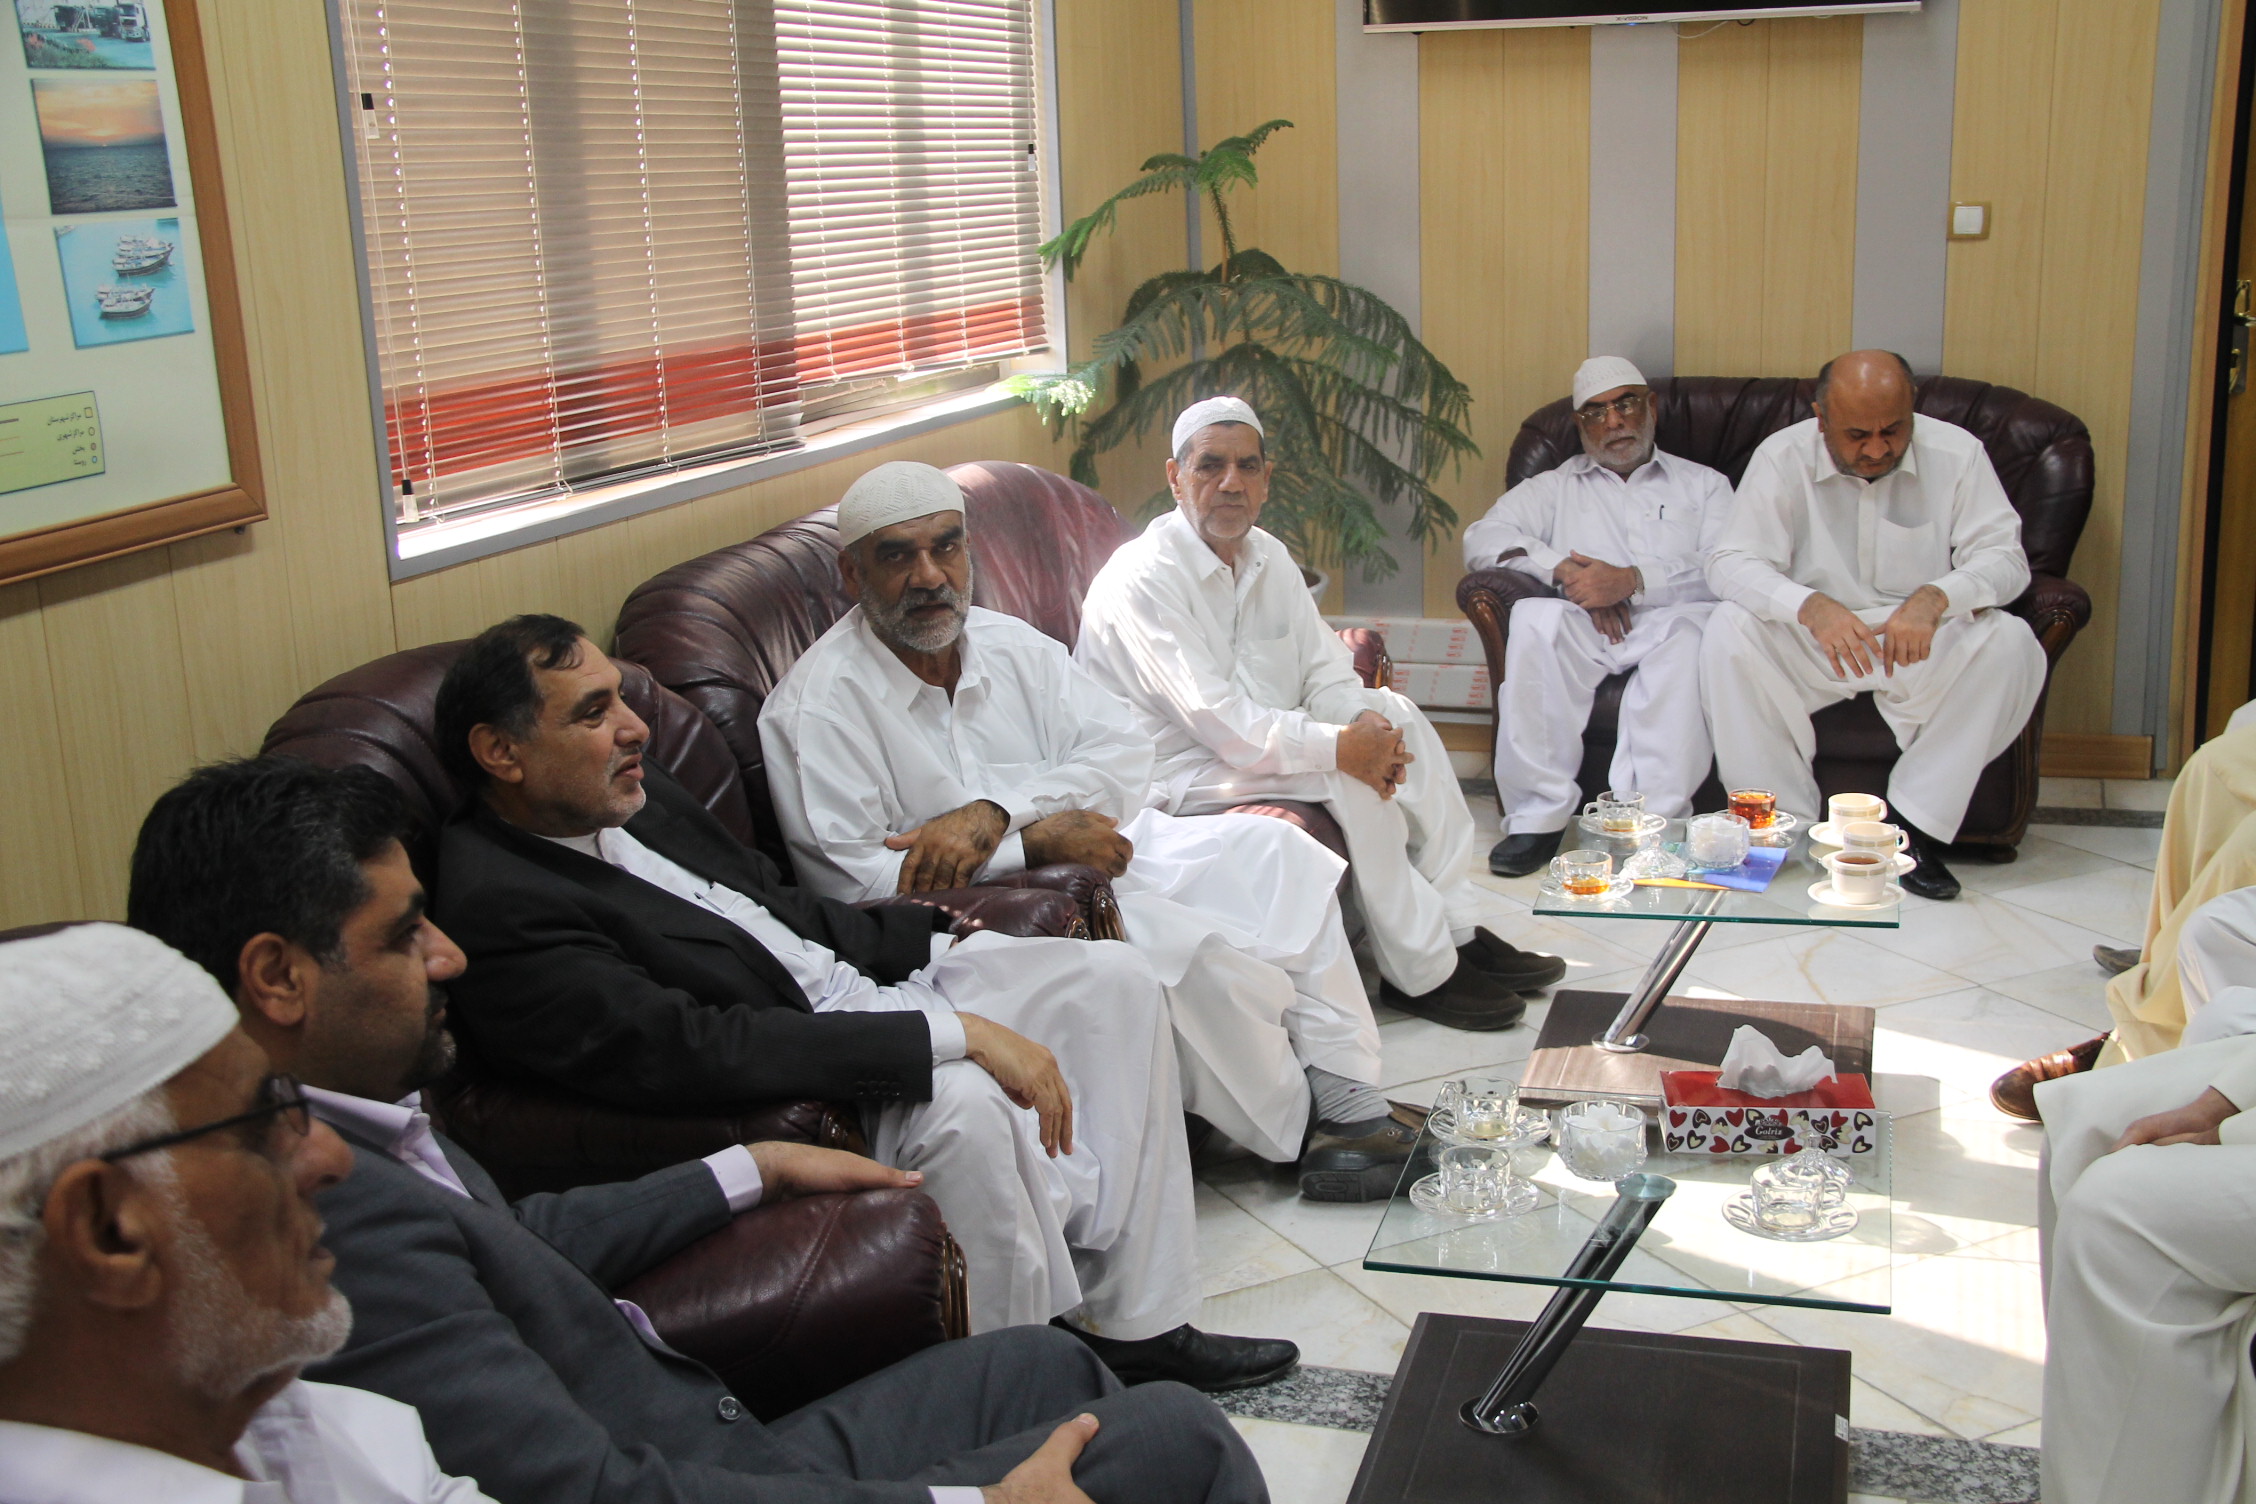 نماینده مردم چابهار در مجلس شورای اسلامی با مدیر شرکت نفت منطقه چابهار دیدار کرد